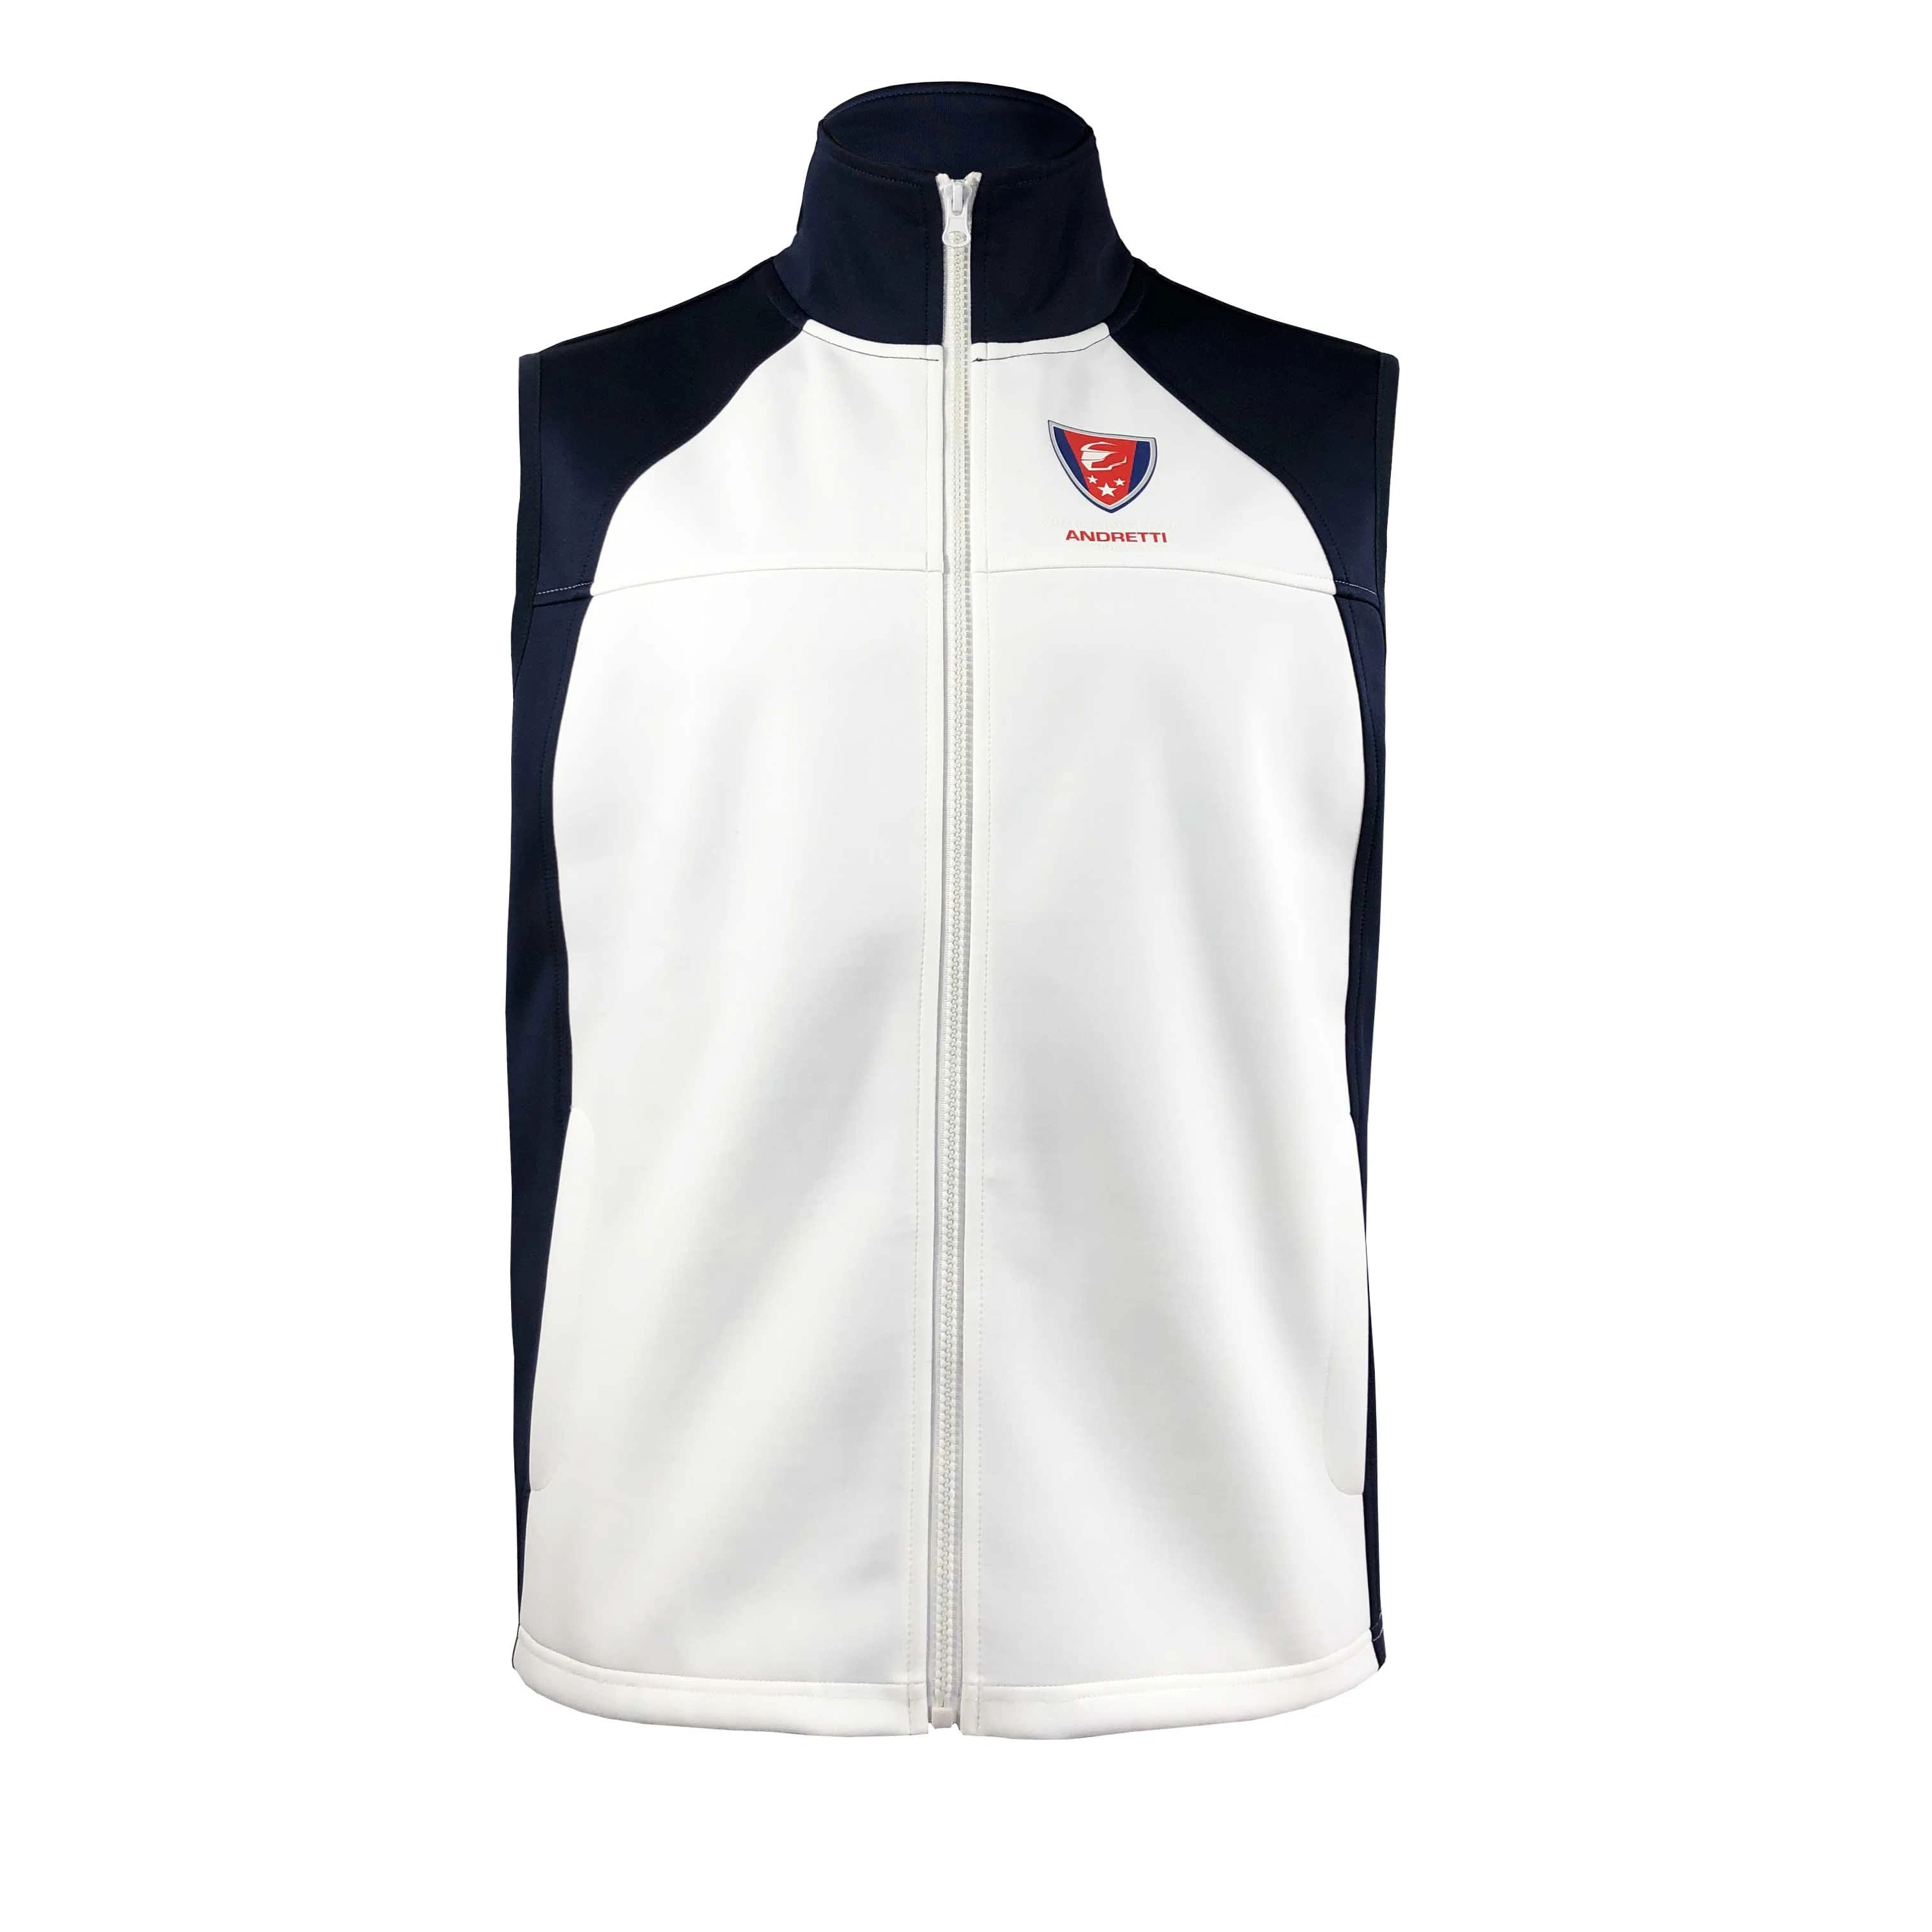 Wholesale Sweat Suits Team Wear Work out Uniform Sports Vest